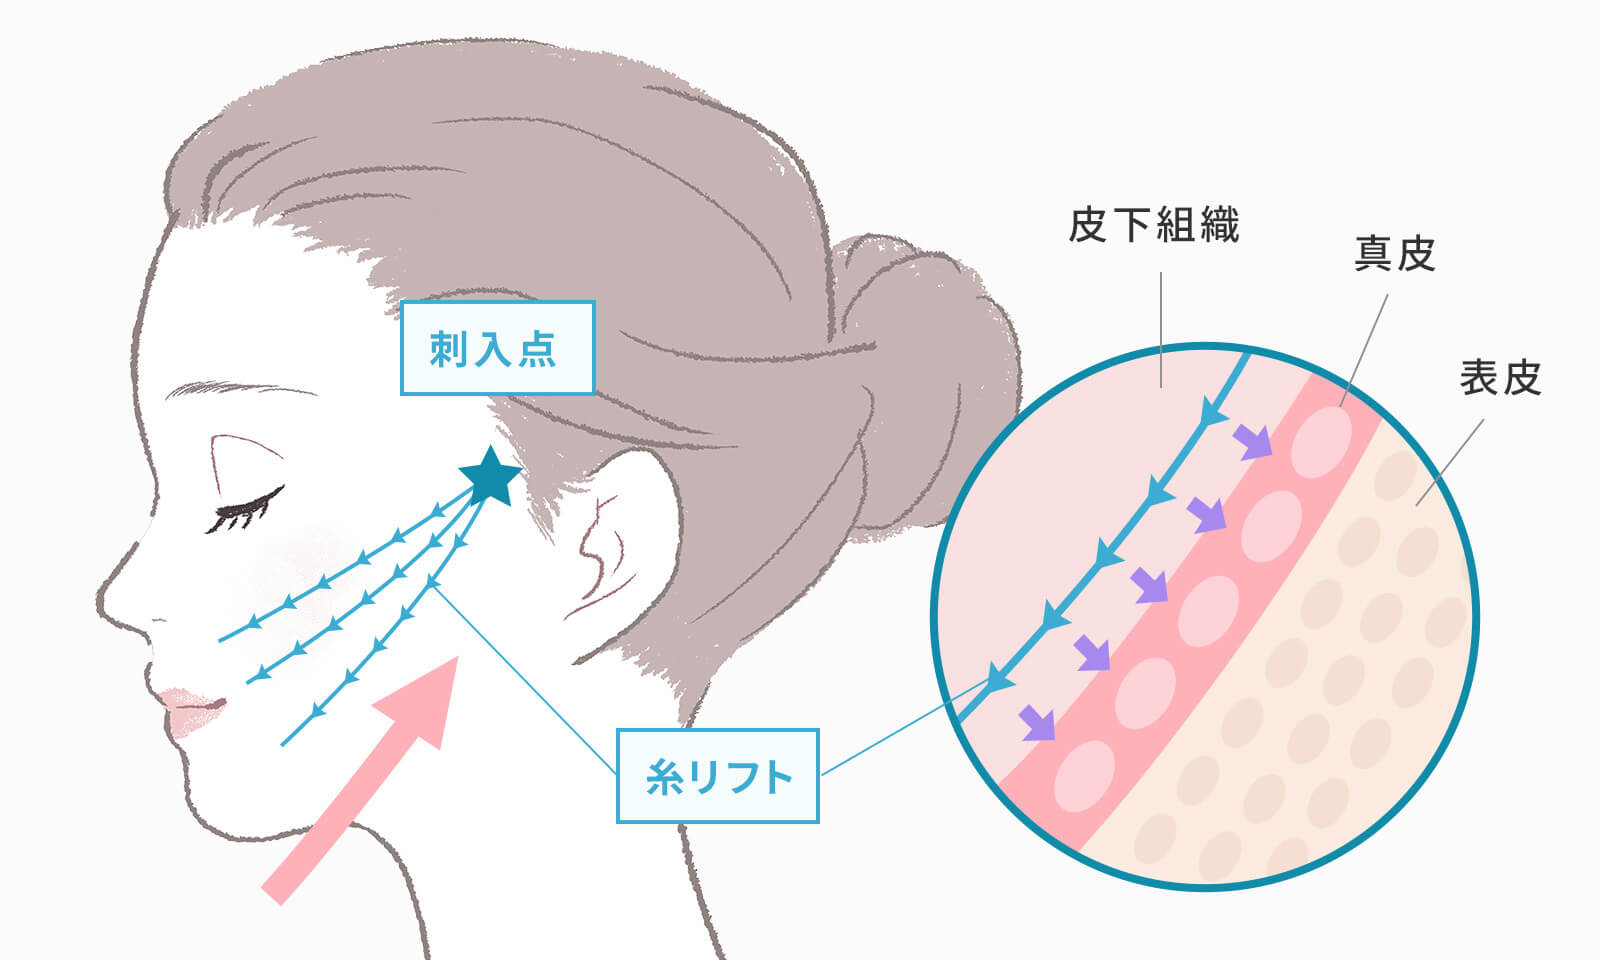 糸リフト治療の概要を図に表しました。
こめかみ付近の生え際から特殊な糸を挿入して皮膚や皮下組織を持ち上げ、顔のシワやたるみを改善する治療法です。